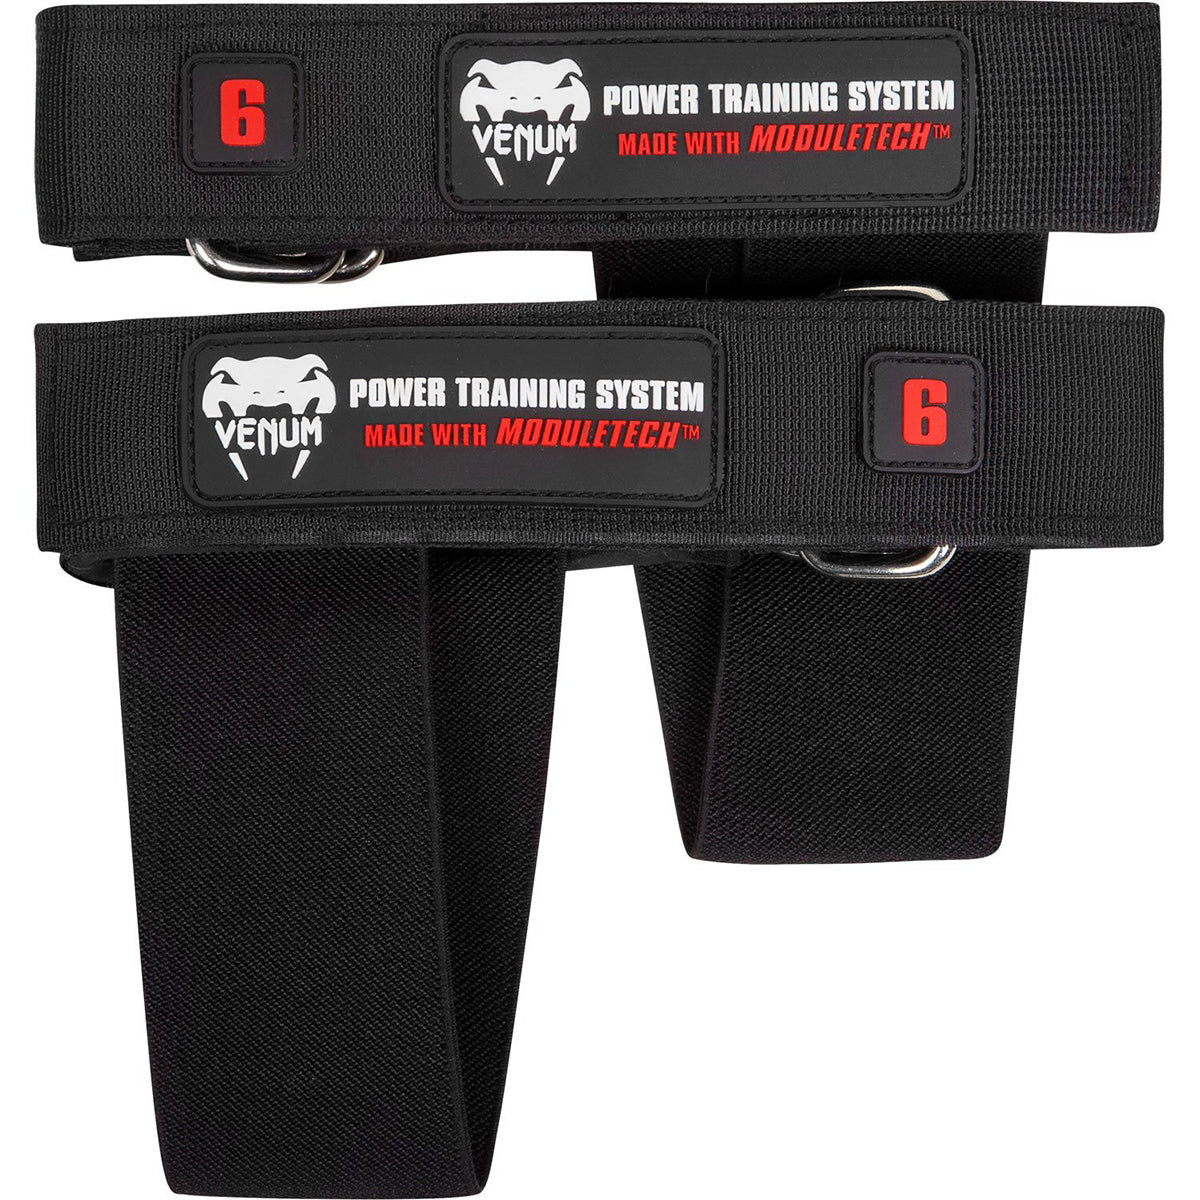 Venum Full Body Exercise Power Training System - Black/Red Venum